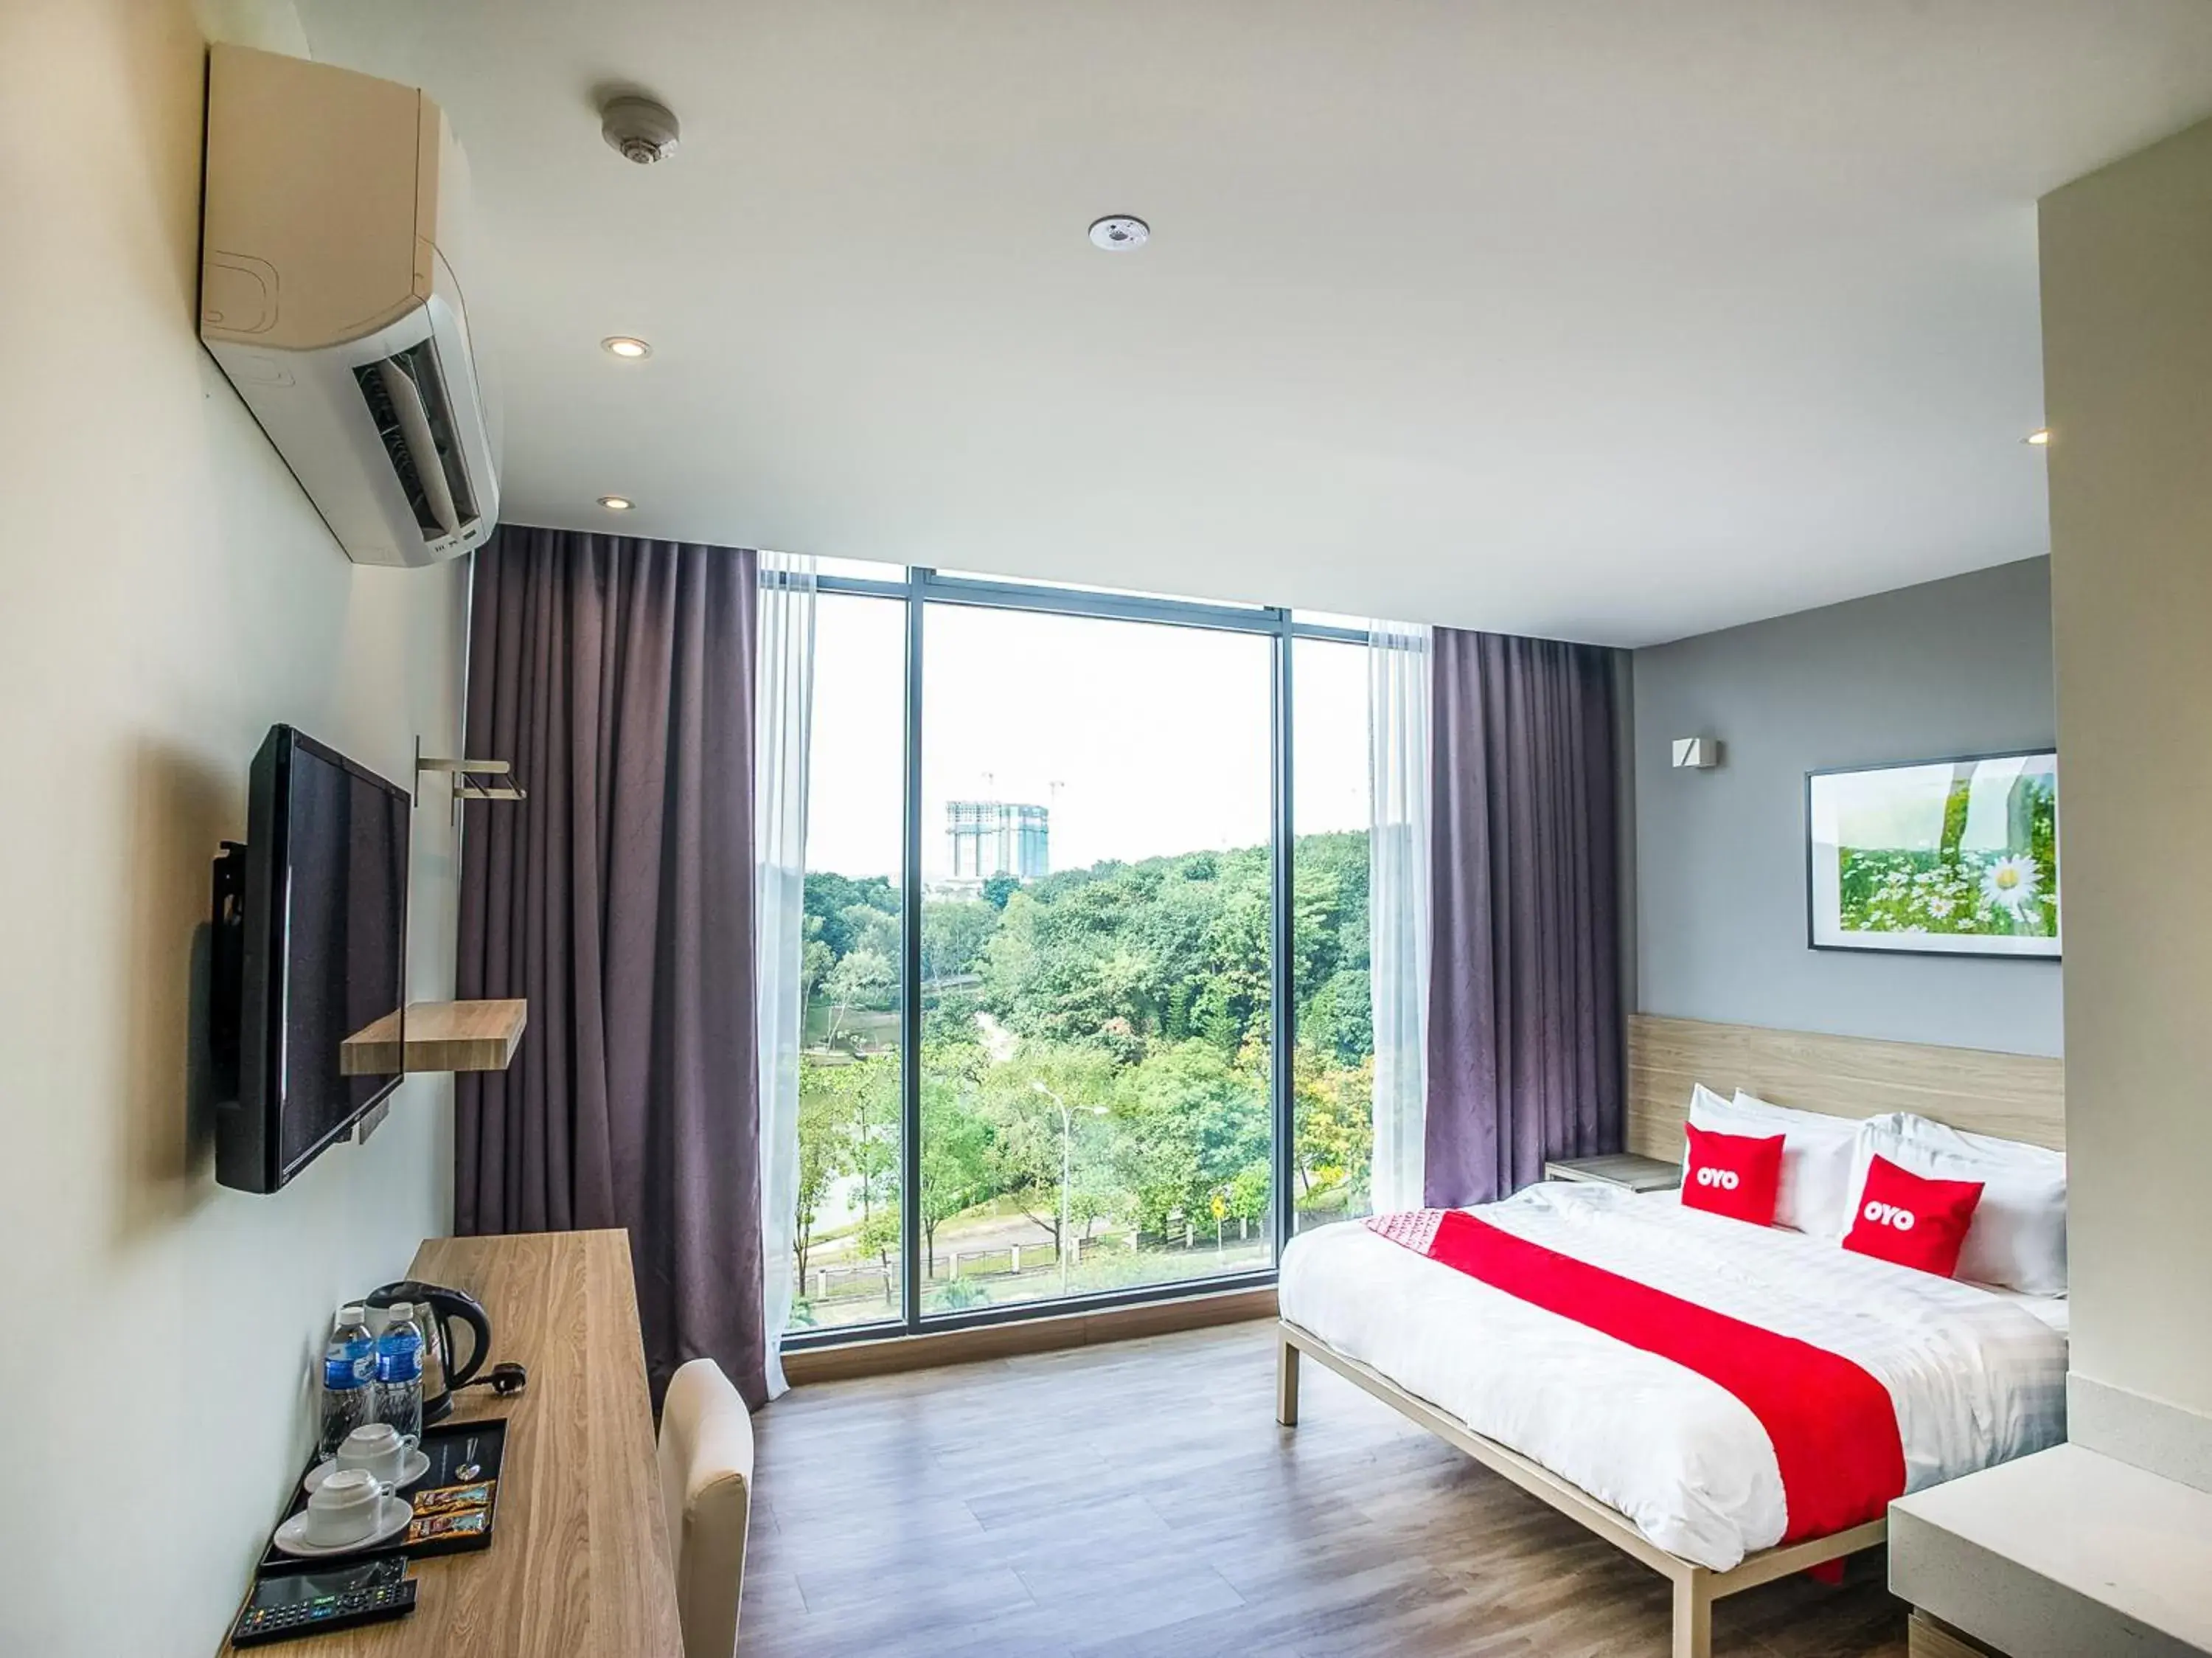 Bedroom in OYO 89576 Mokka Hotel